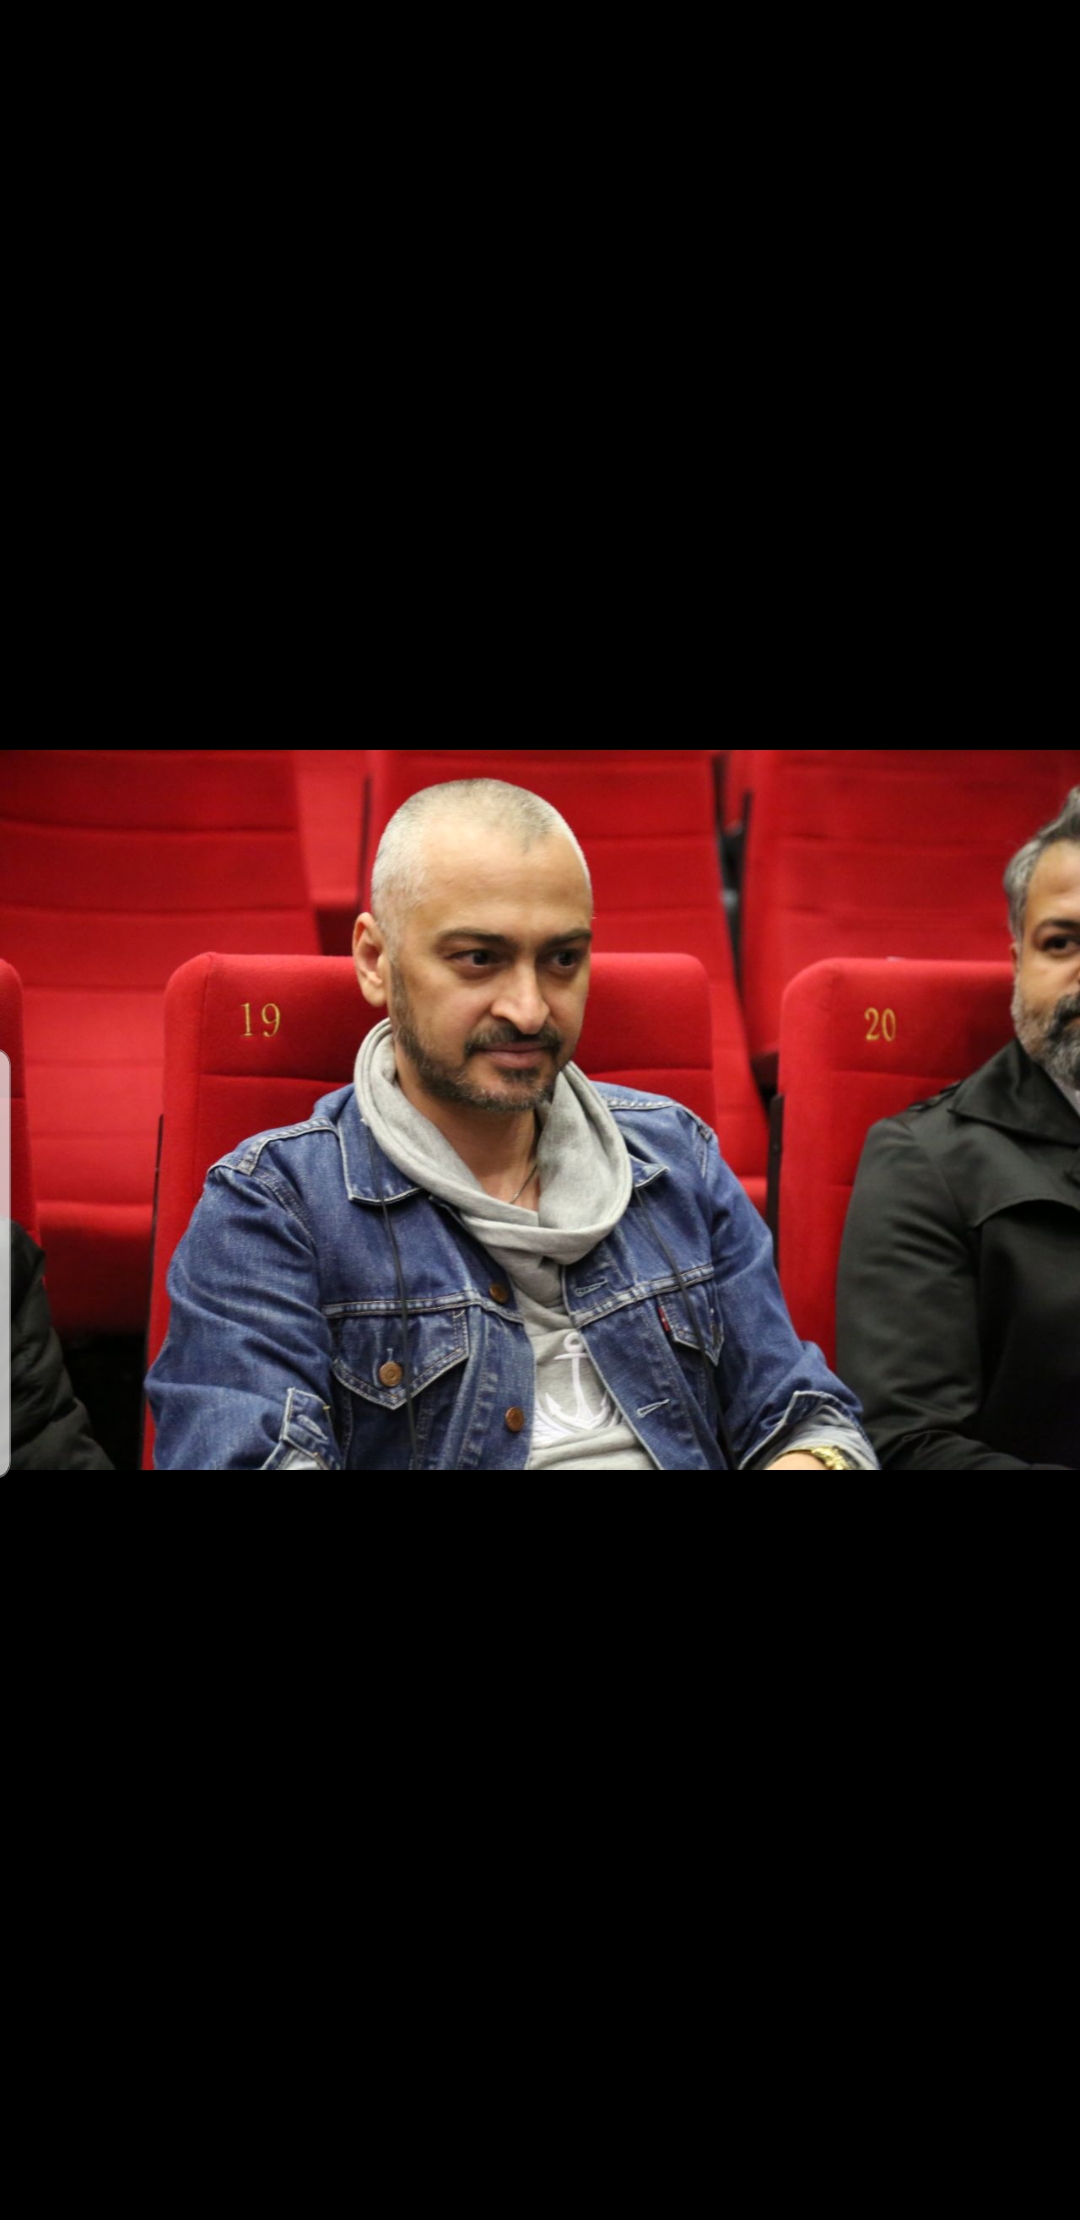 تصویری از سعید رضایی، بازیگر و اجرای دکور سینما و تلویزیون در حال بازیگری سر صحنه یکی از آثارش